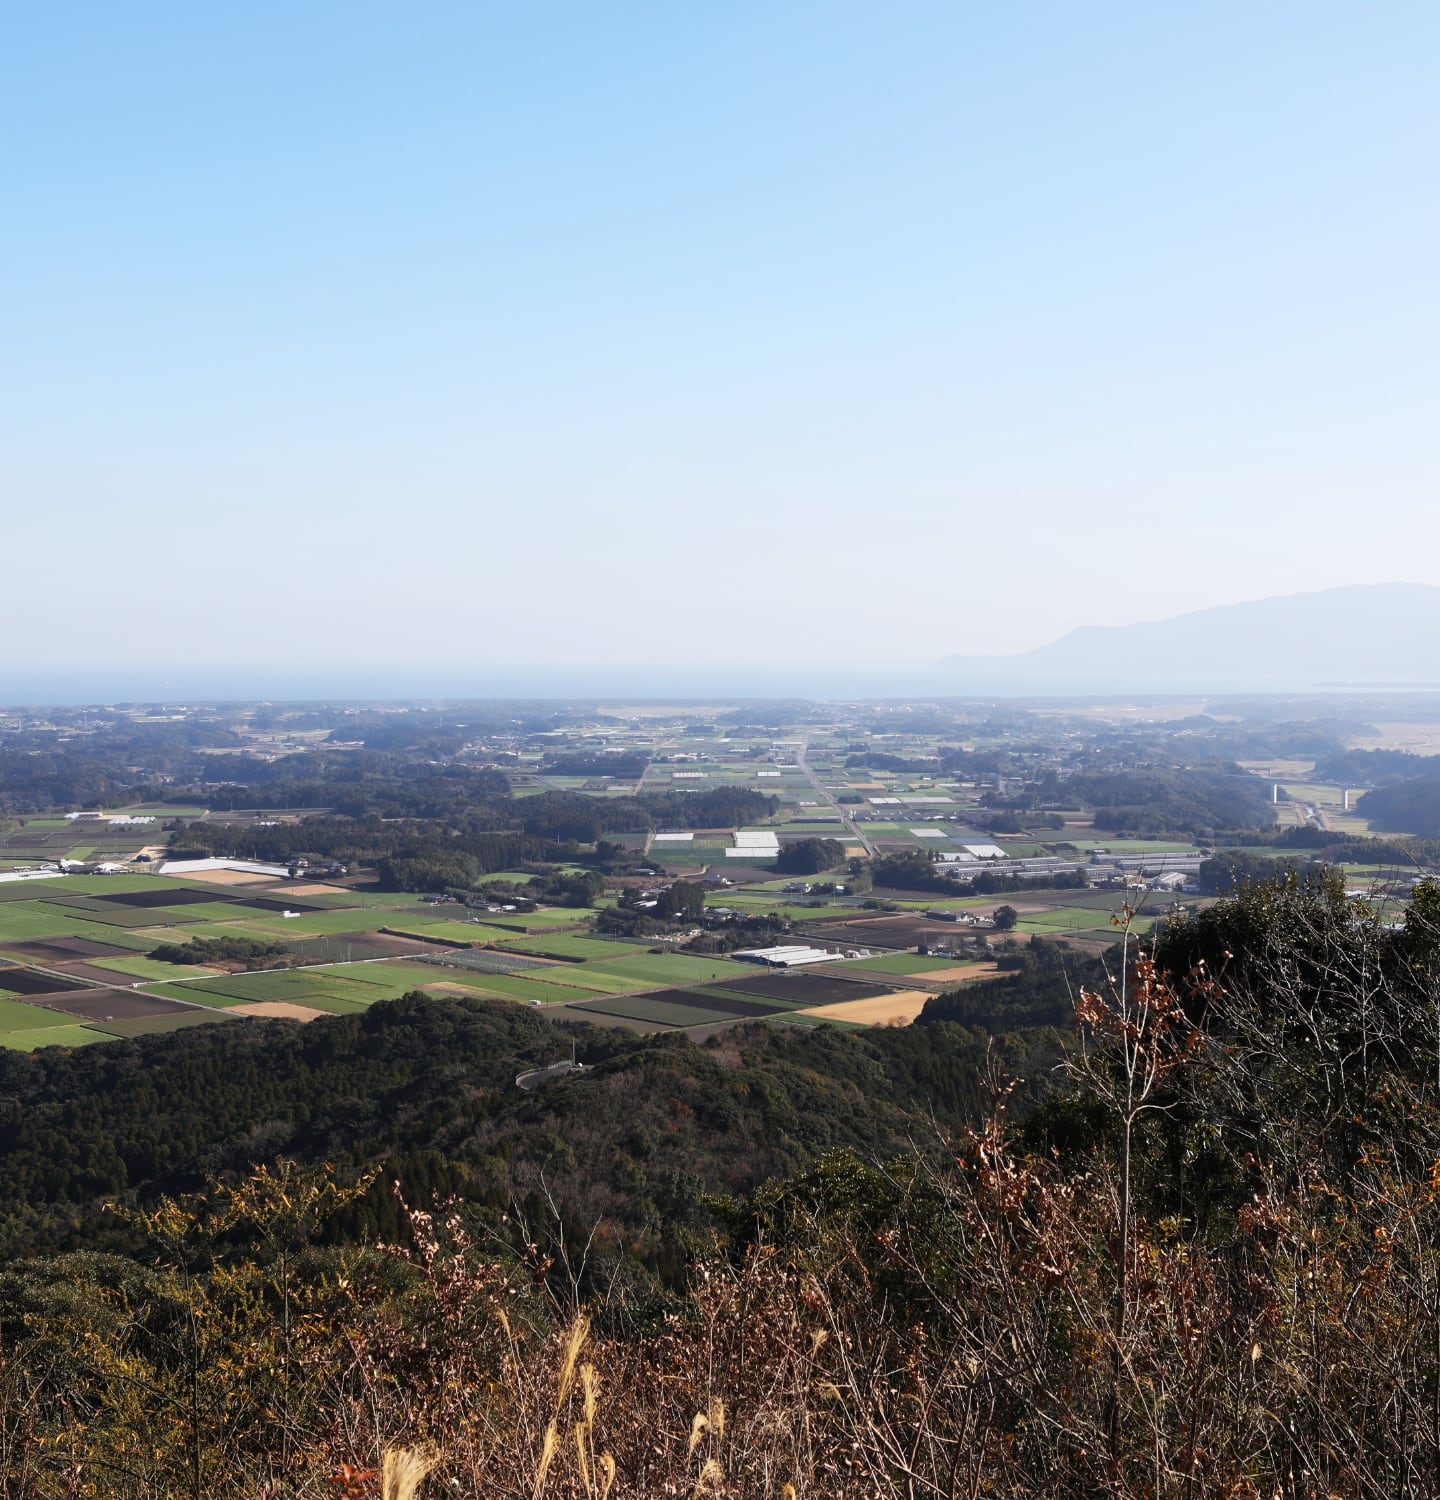 migakiba osakiのイメージ画像。小高い場所から望む、大崎町の田畑の風景が広がっています。